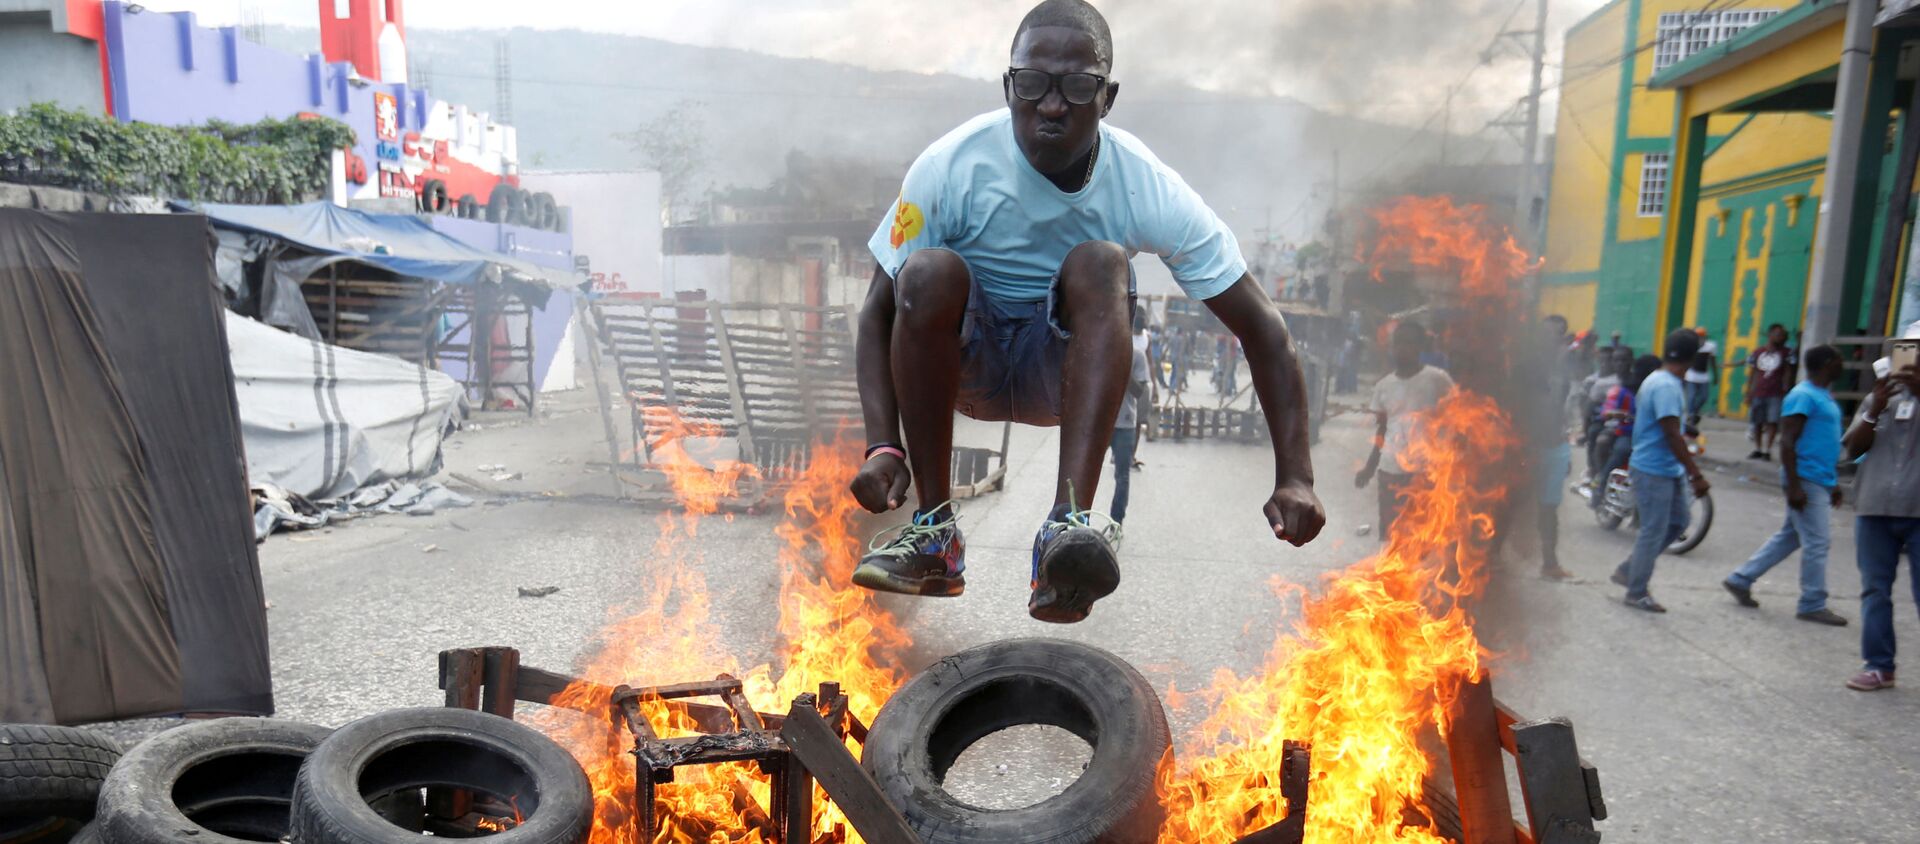 Протестующий перепрыгивает через горящую баррикаду во время акции протеста против правительства на улицах Порт-о-Пренса, Гаити, 10 февраля 2019 года. - Sputnik Абхазия, 1920, 17.02.2019